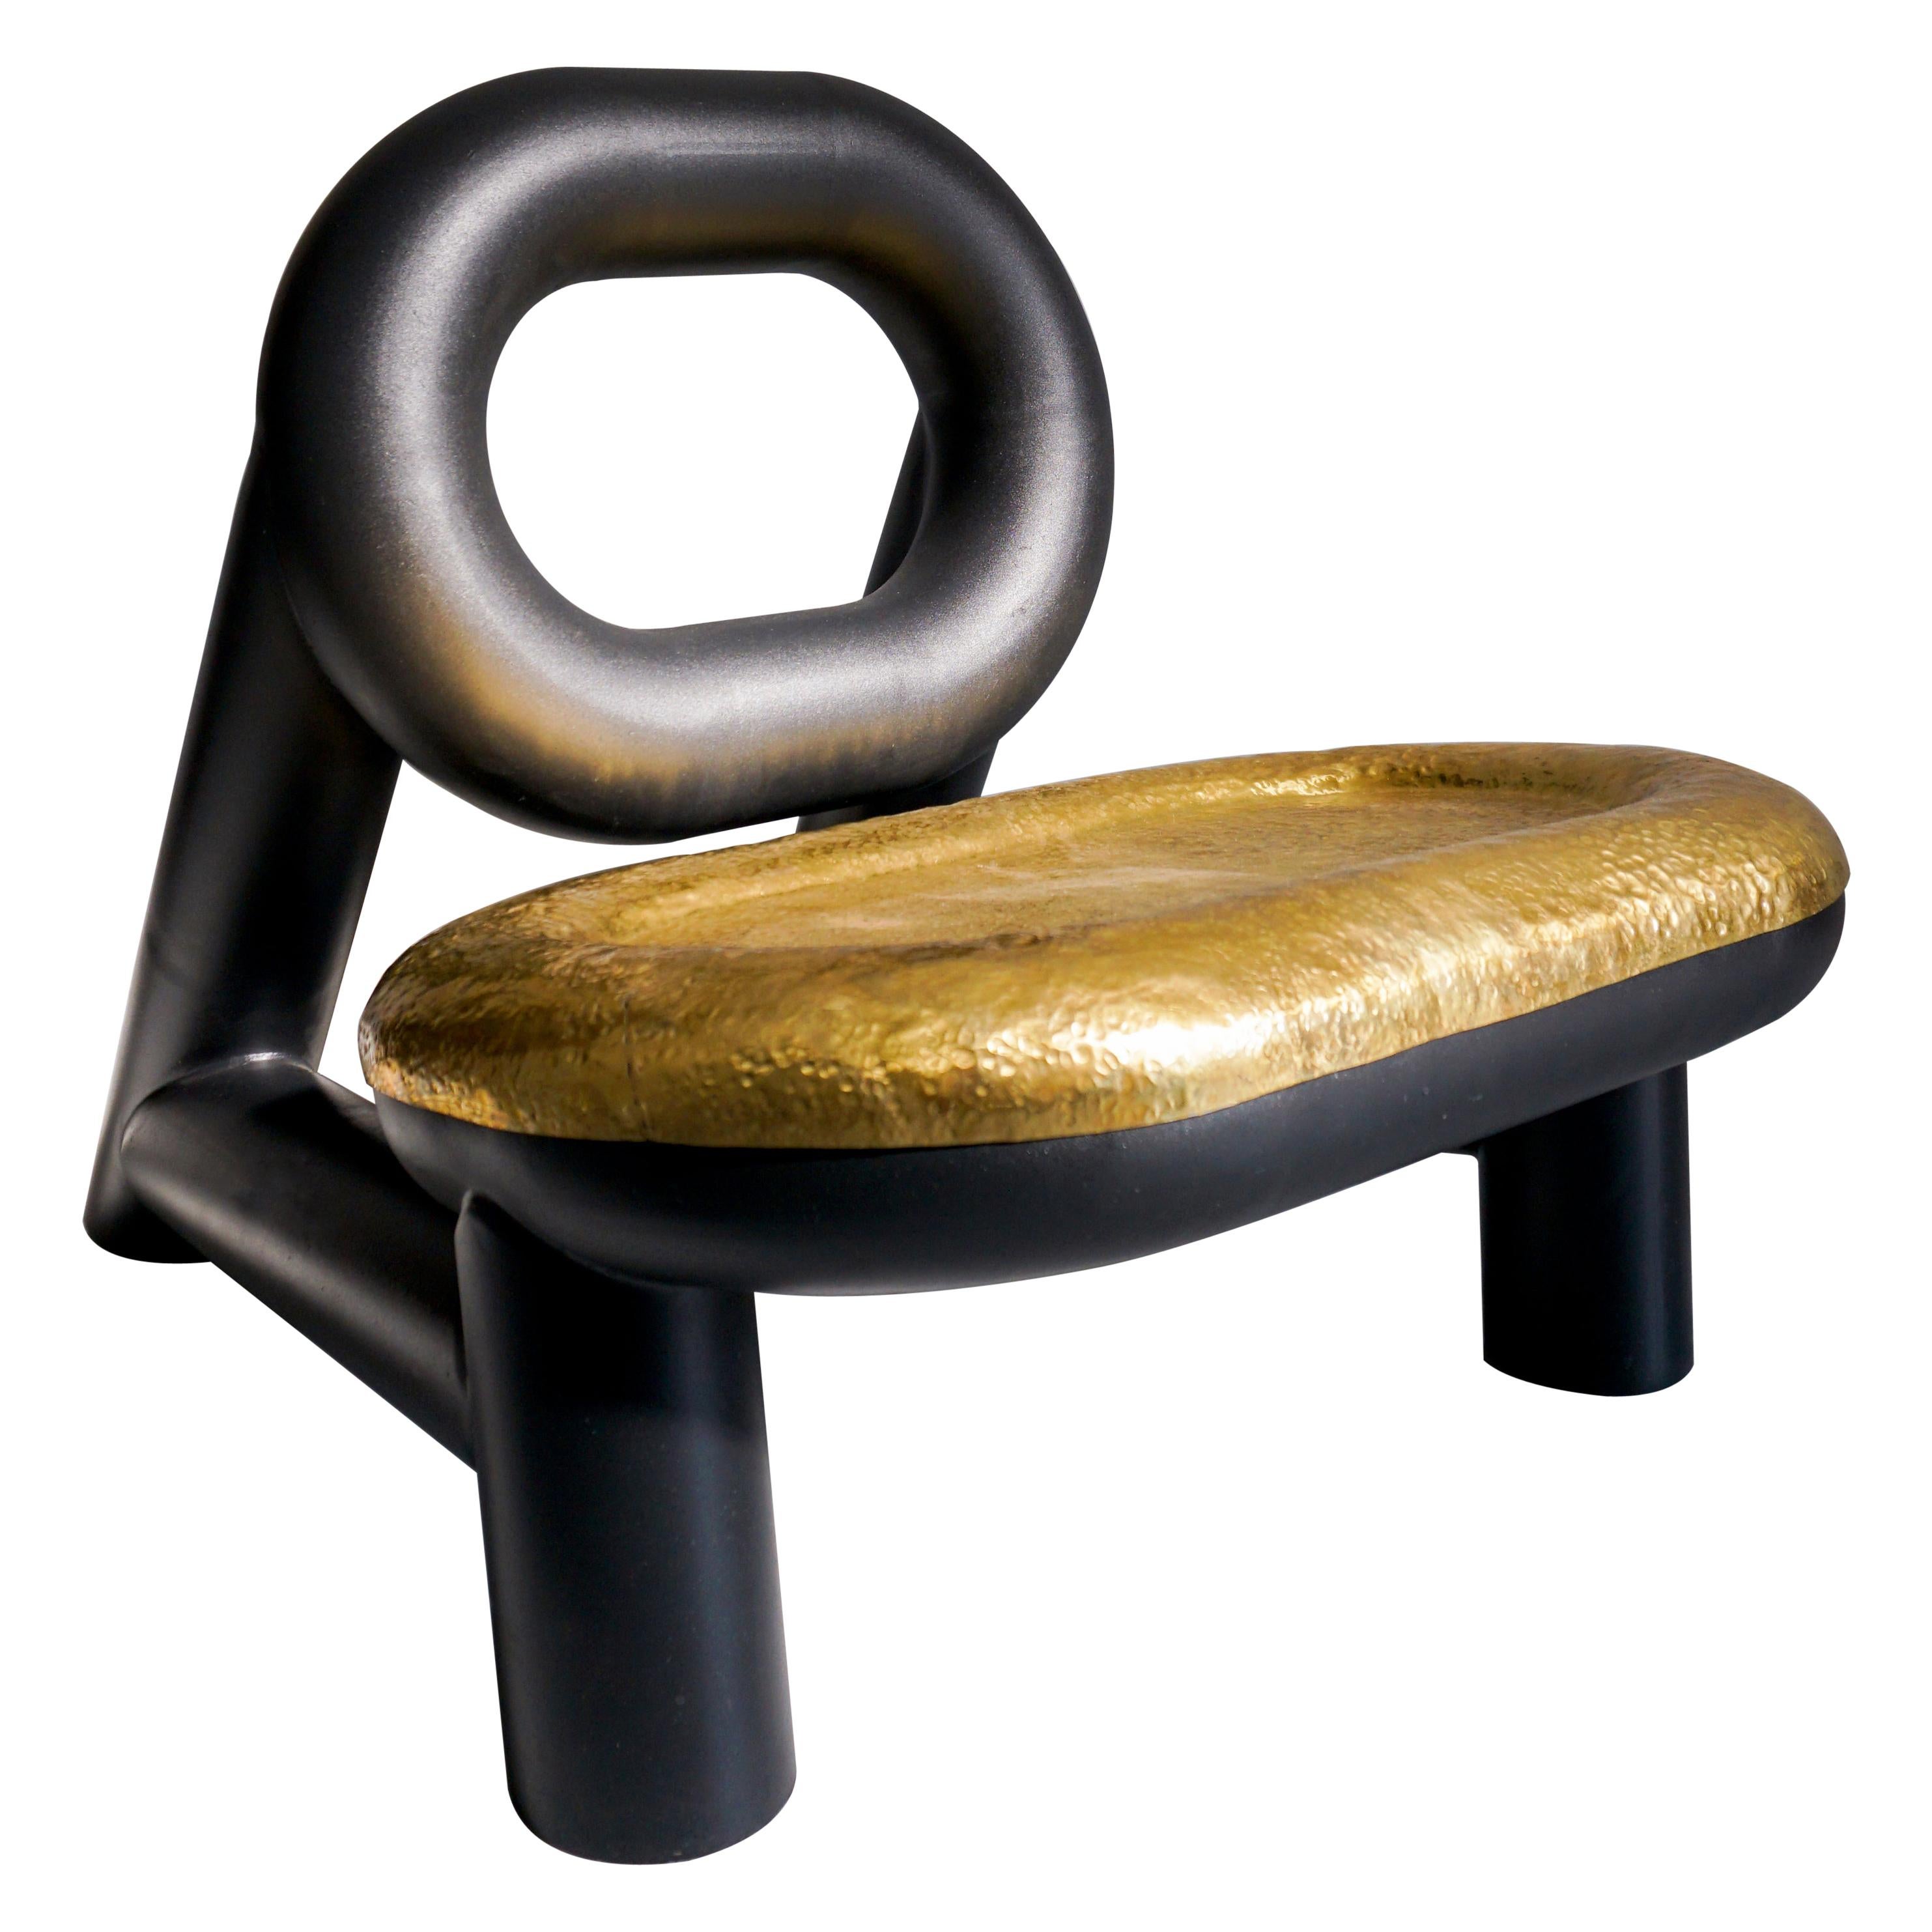 Cane Chair by Rodrigo Lobato Yáñes